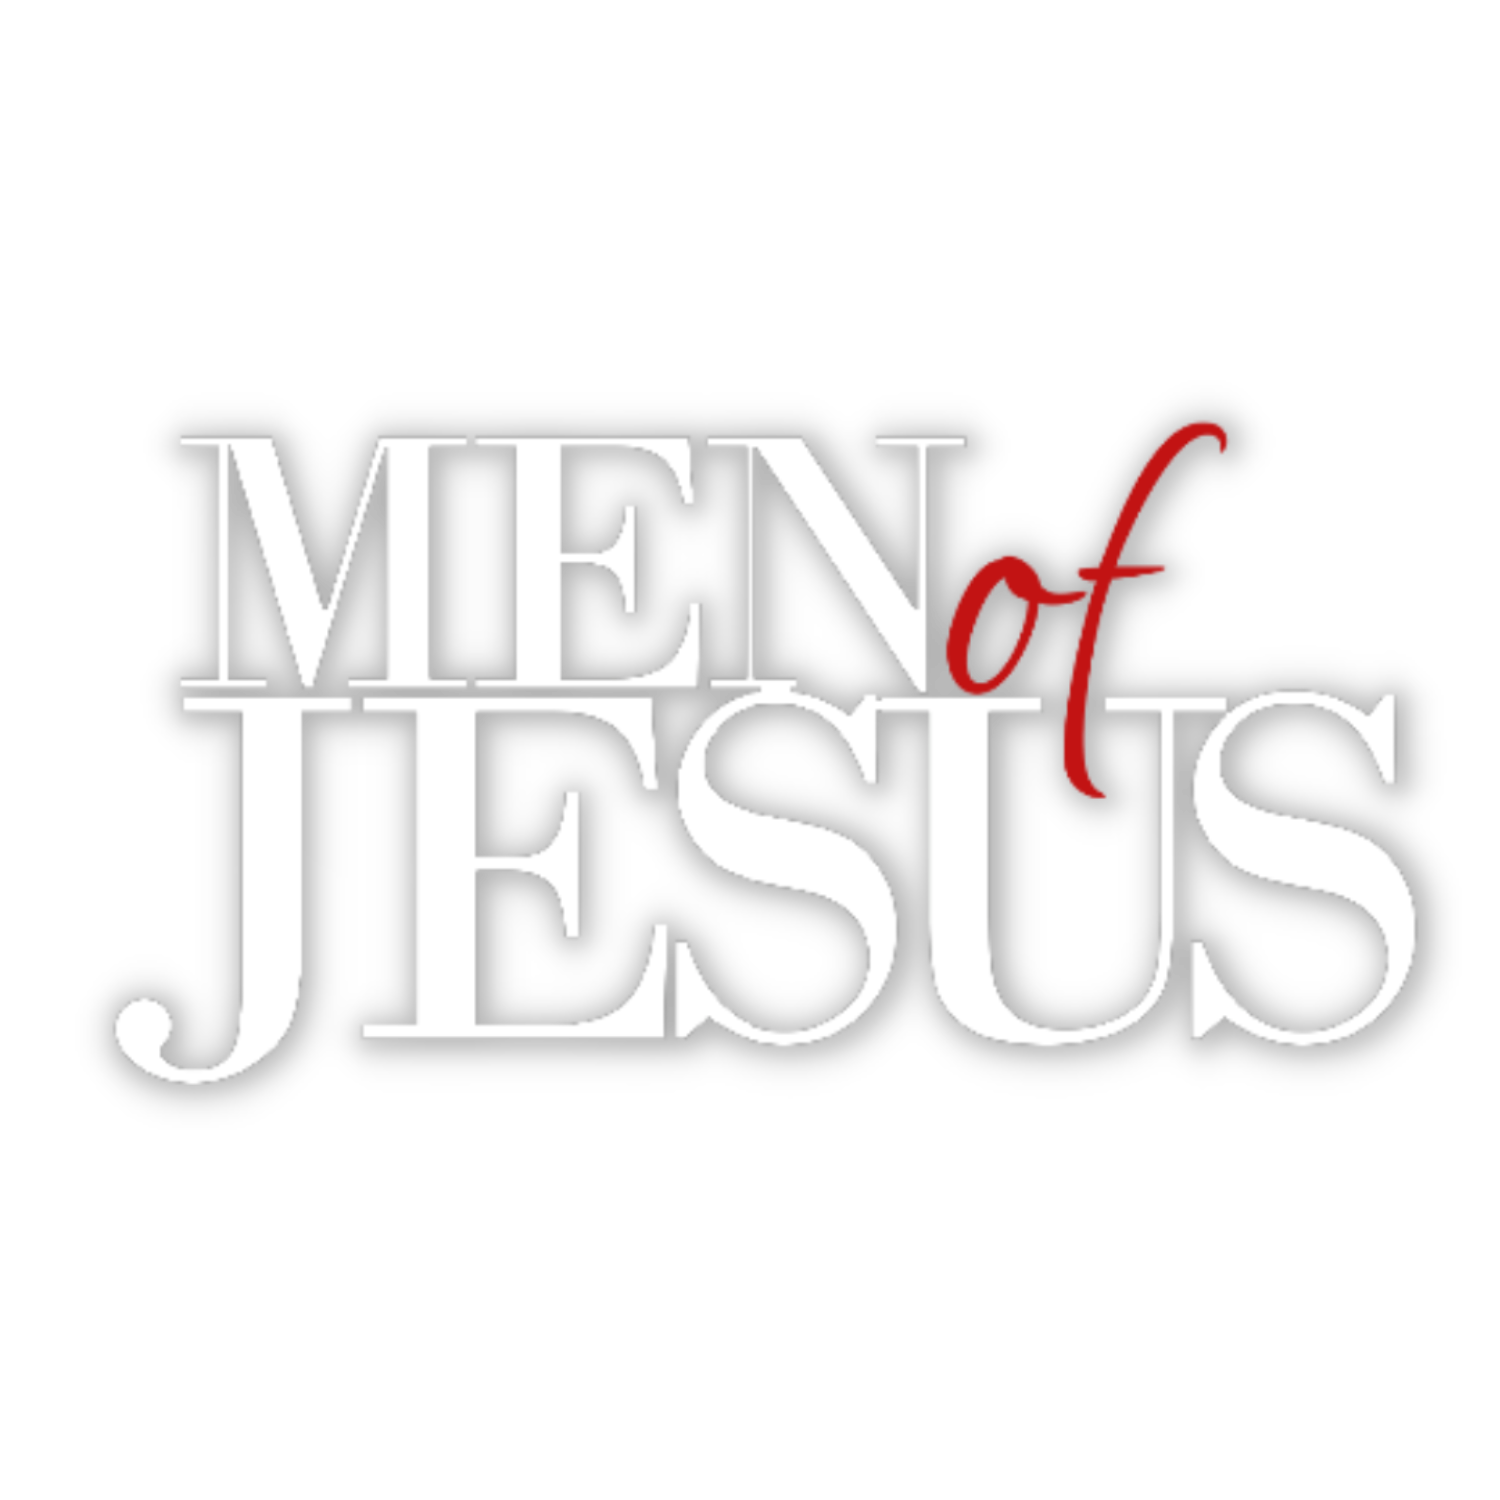 MEN OF JESUS